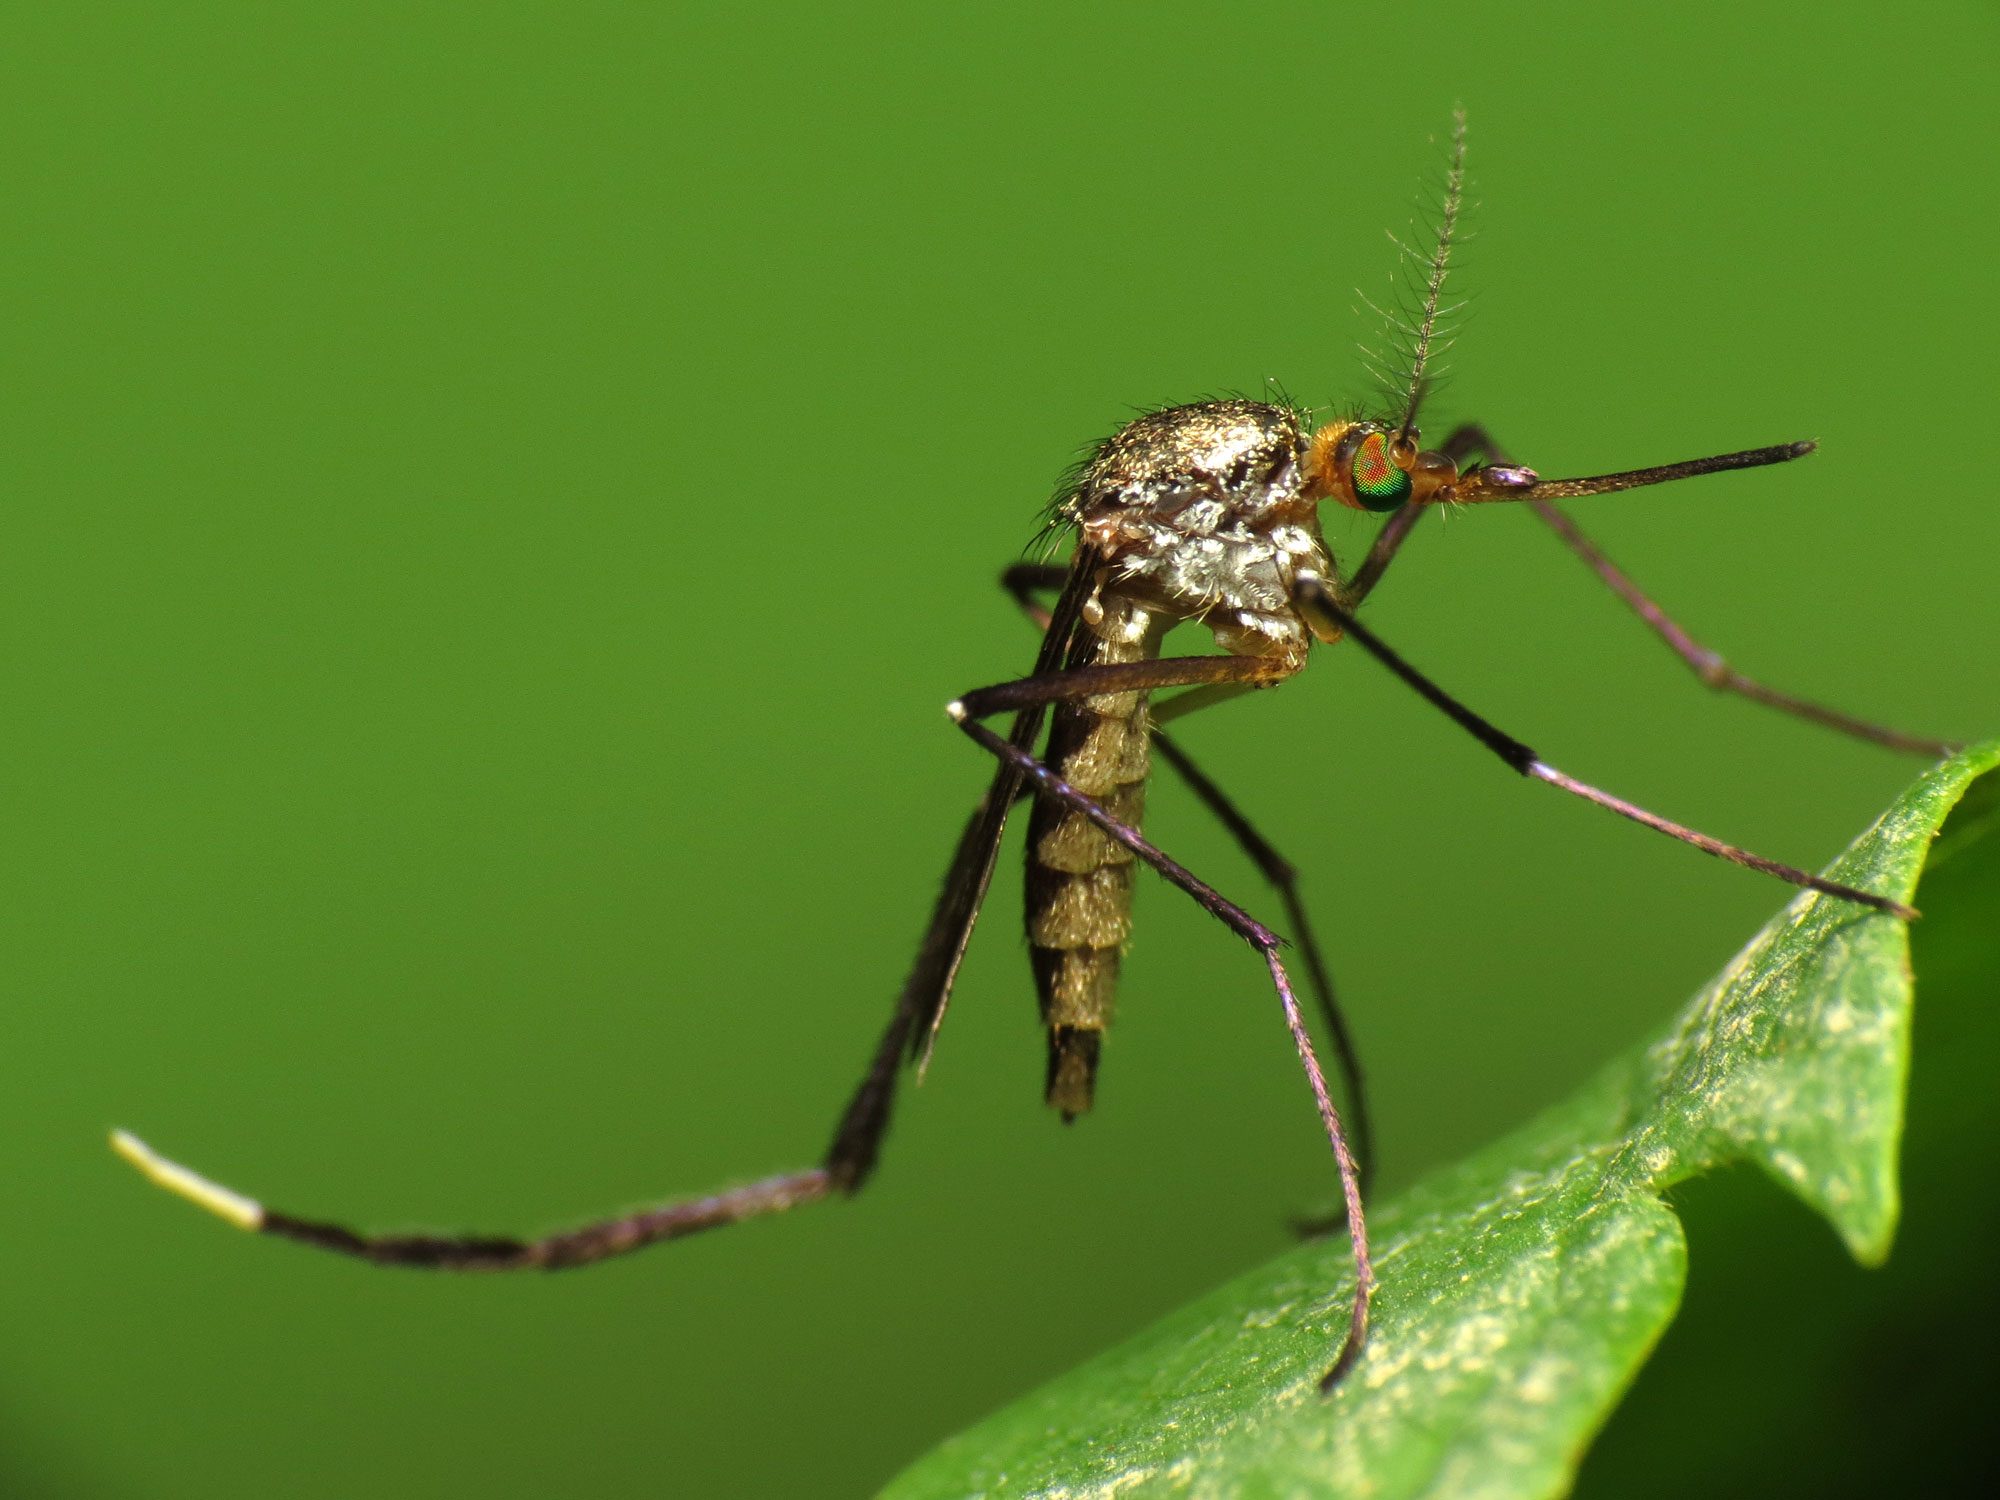  Muỗi mang hạt nhựa có thể làm lây lan sang thực phẩm của con người.